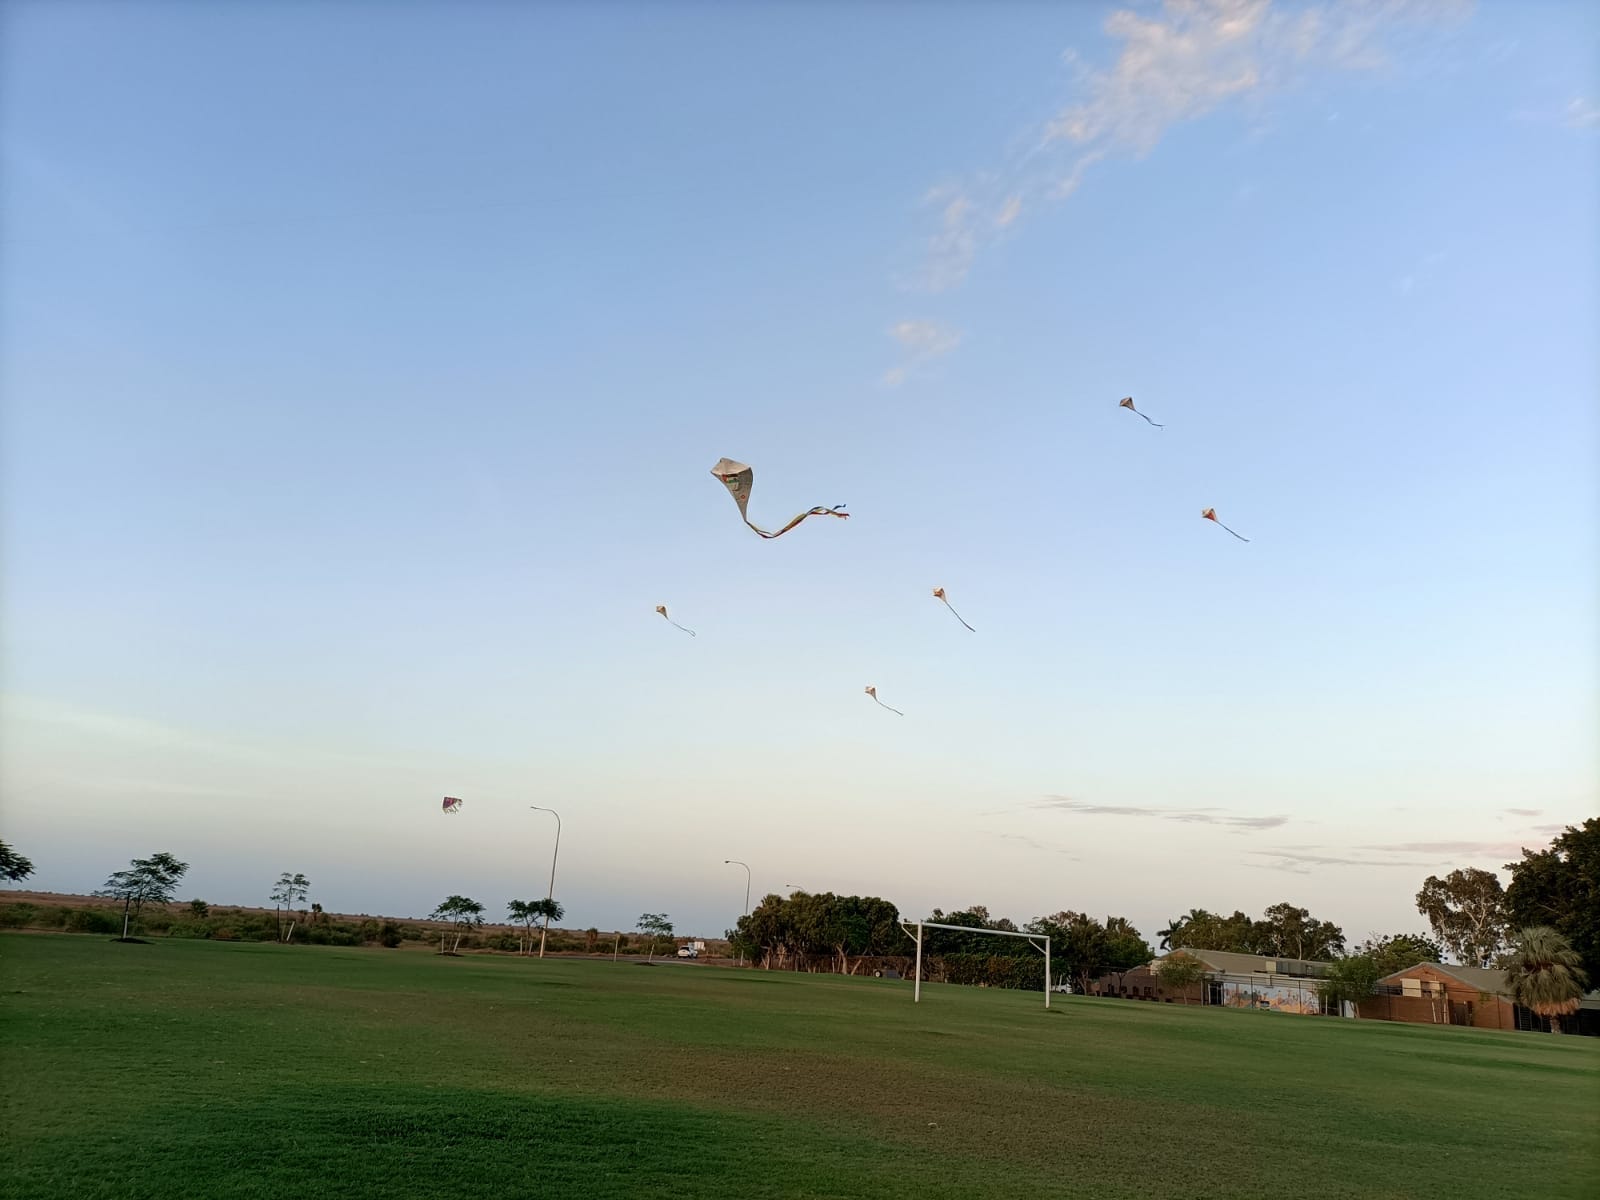 Kites flying for Gaza.